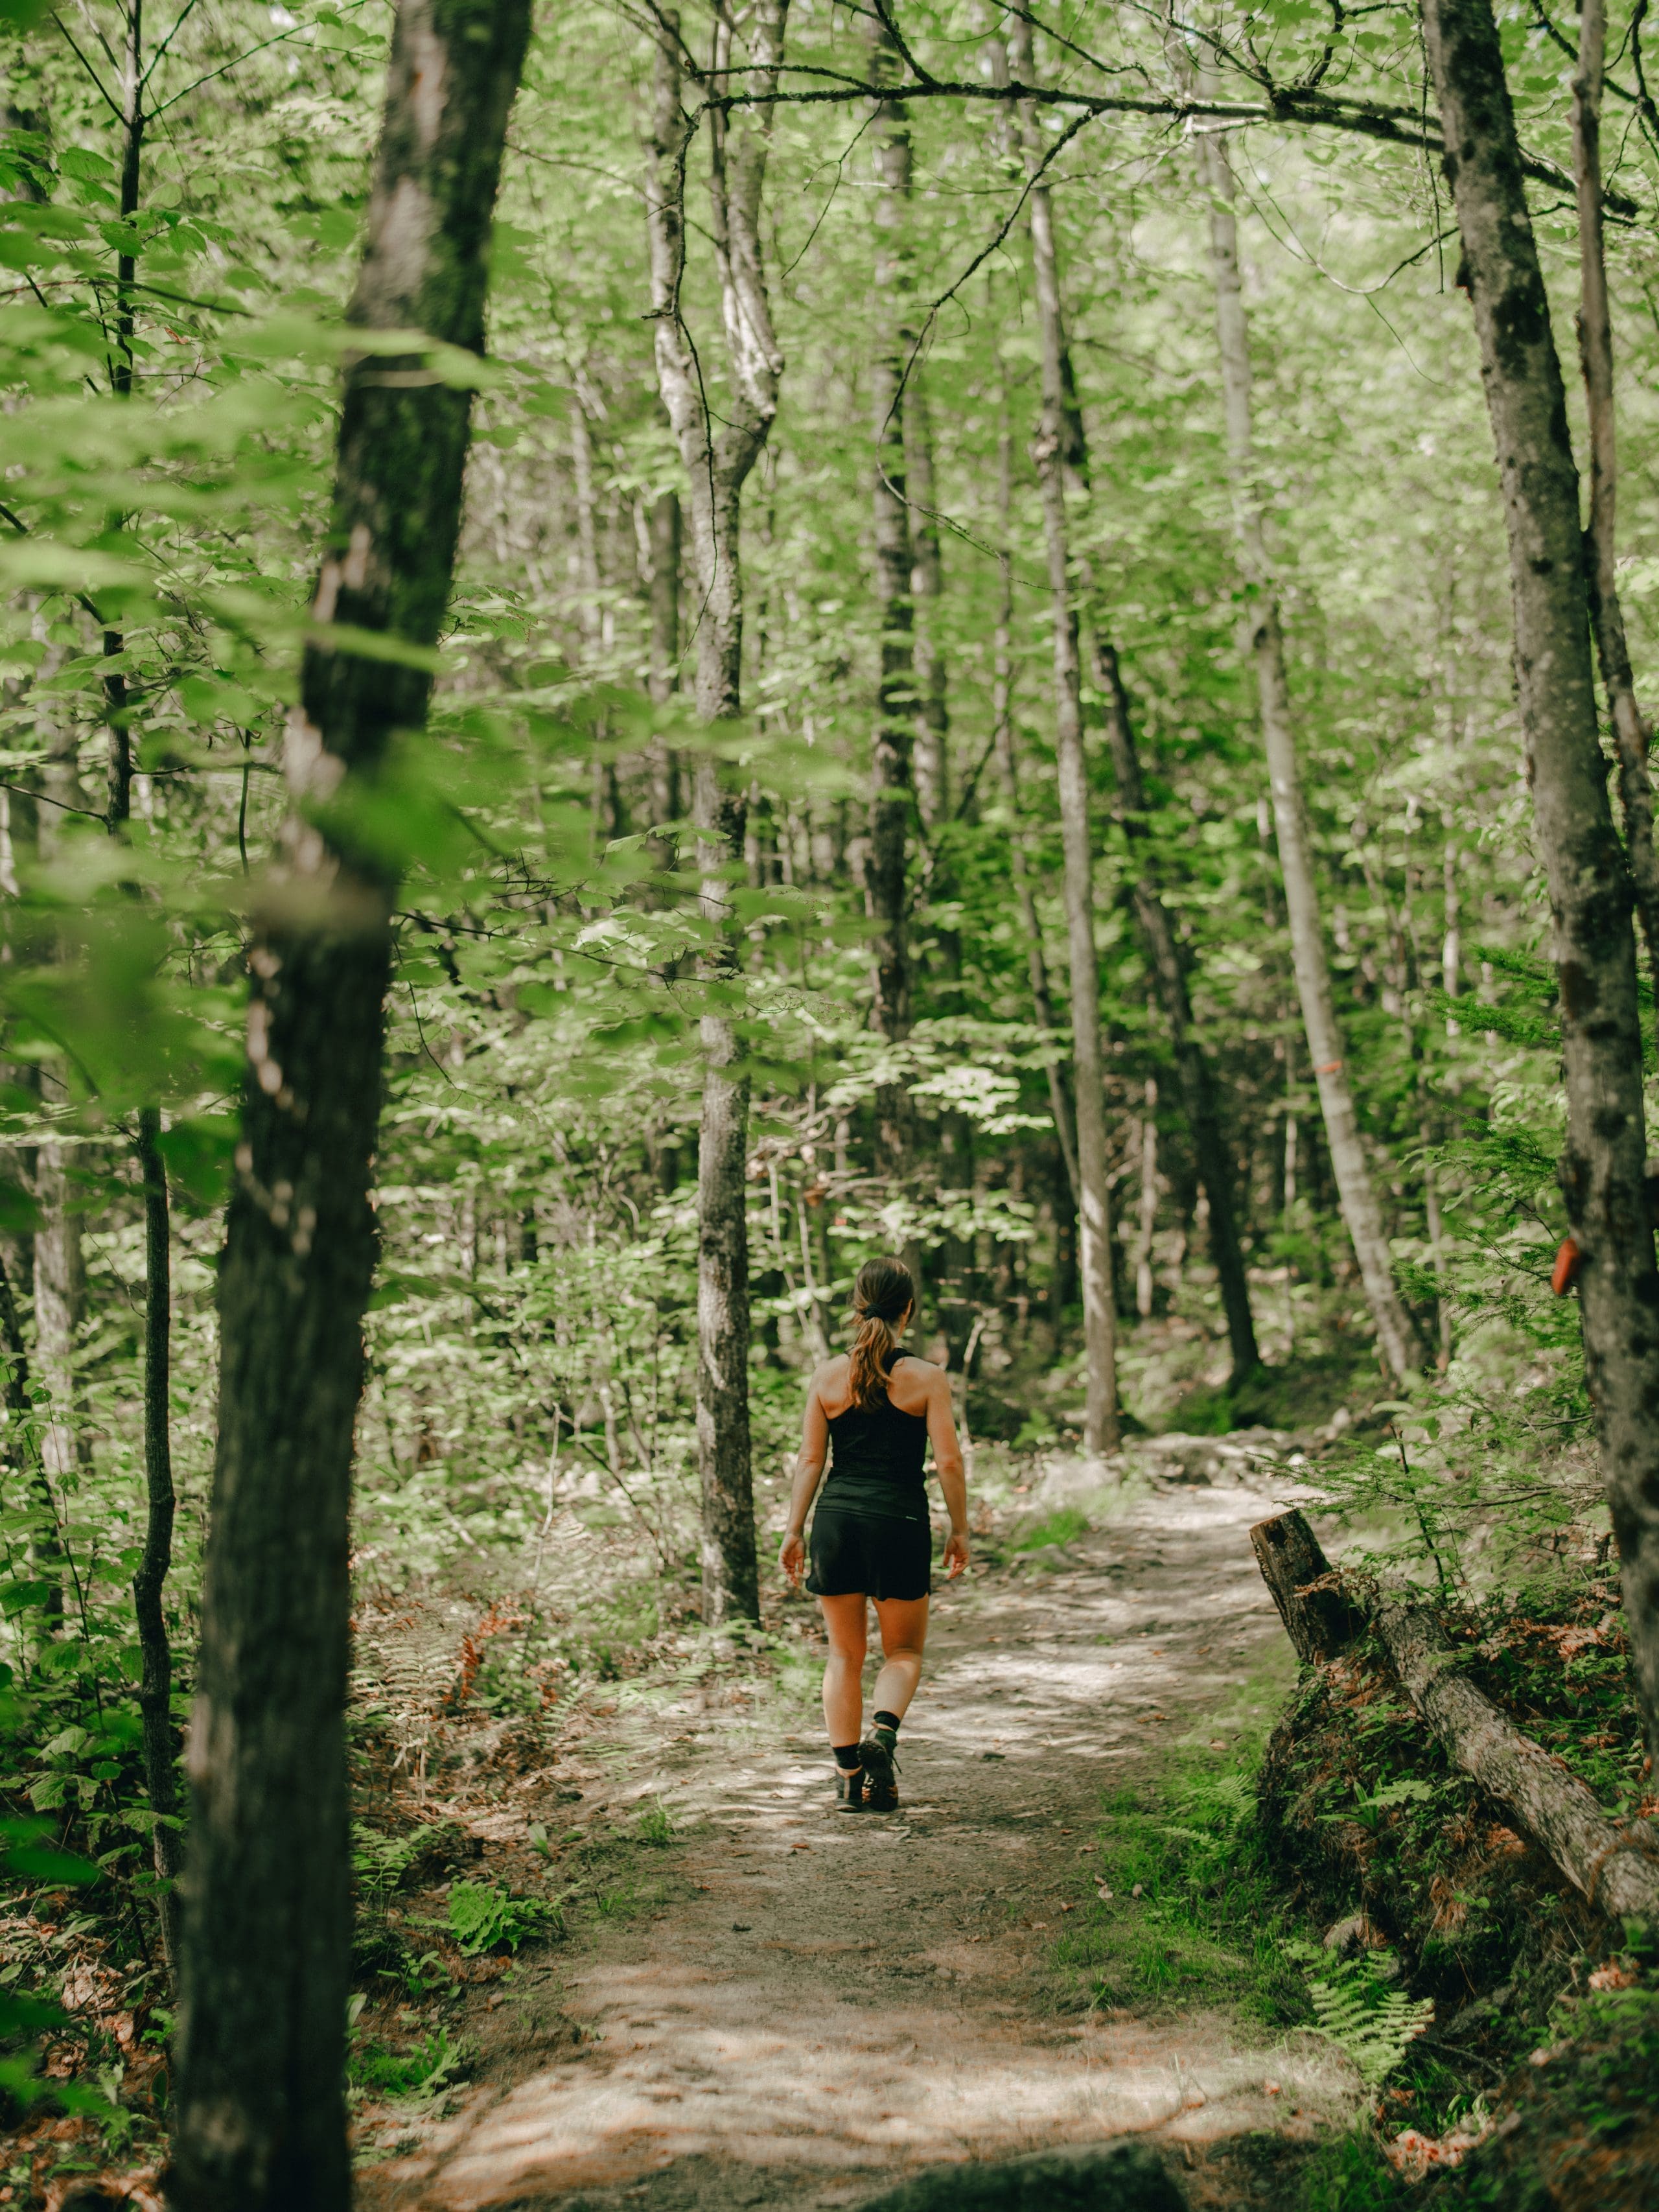 Une femme s’éloigne de la caméra sur un sentier boisé, entouré d’arbres verts luxuriants, vêtue d’une tenue d’entraînement noire Accueil. Le chemin est étroit et tourne légèrement vers la droite.